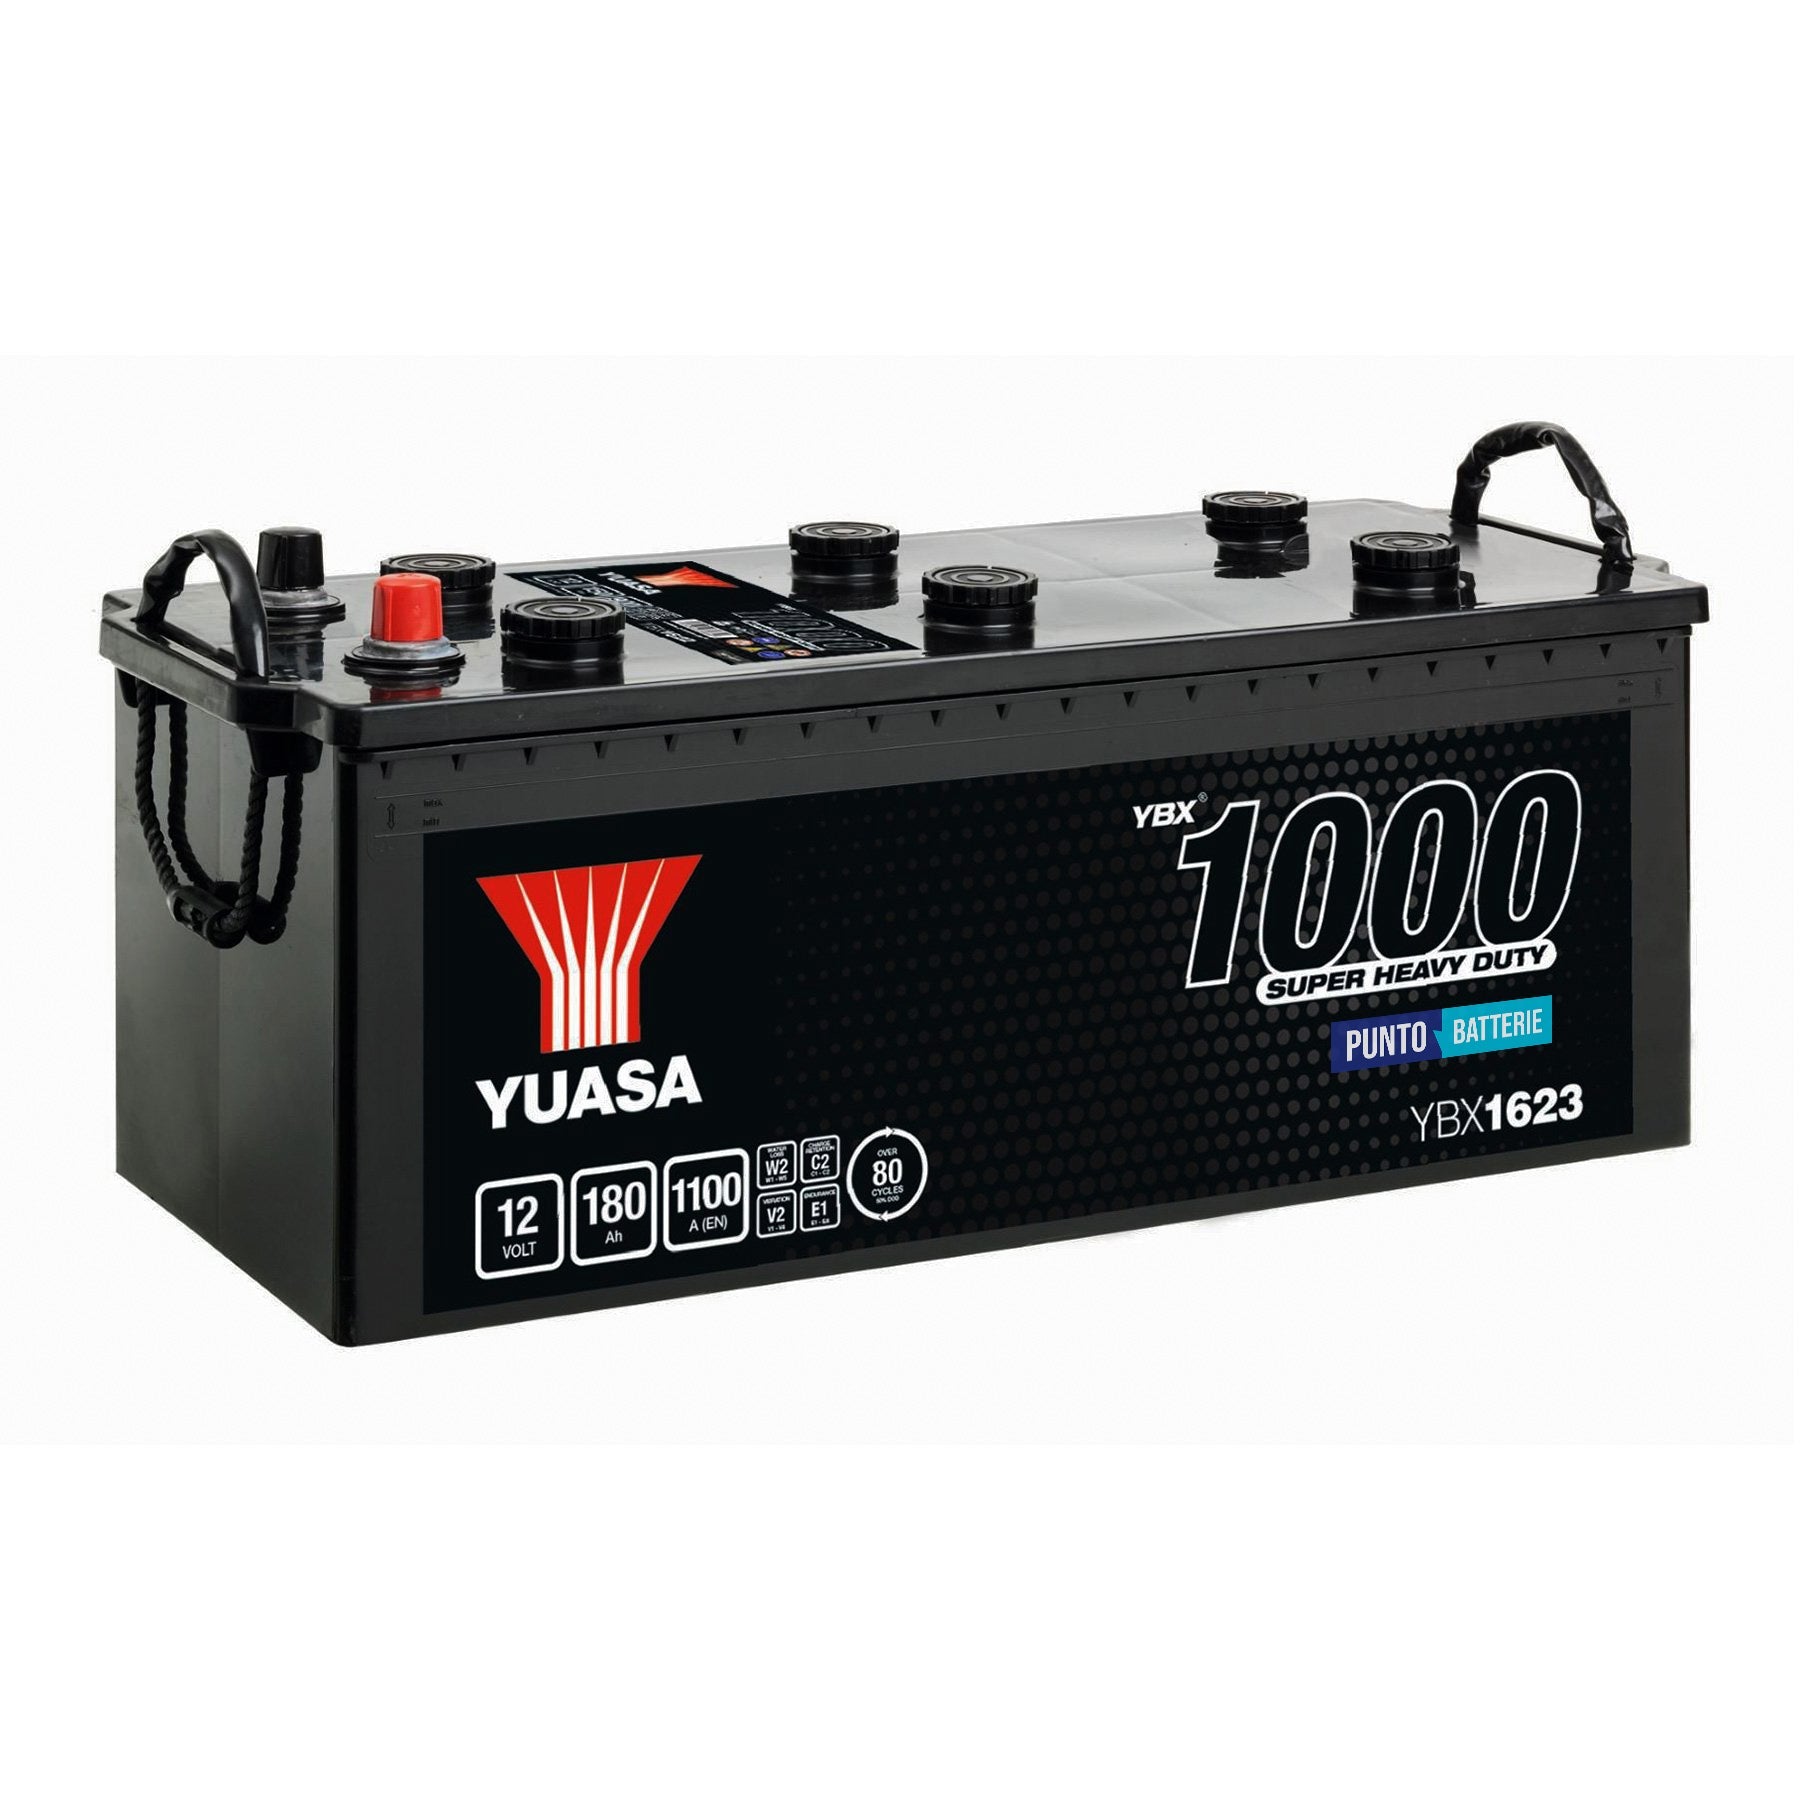 Batteria originale Yuasa YBX1000 YBX1623, dimensioni 513 x 223 x 223, polo positivo a destra, 12 volt, 180 amperora, 1100 ampere. Batteria per camion e veicoli pesanti.